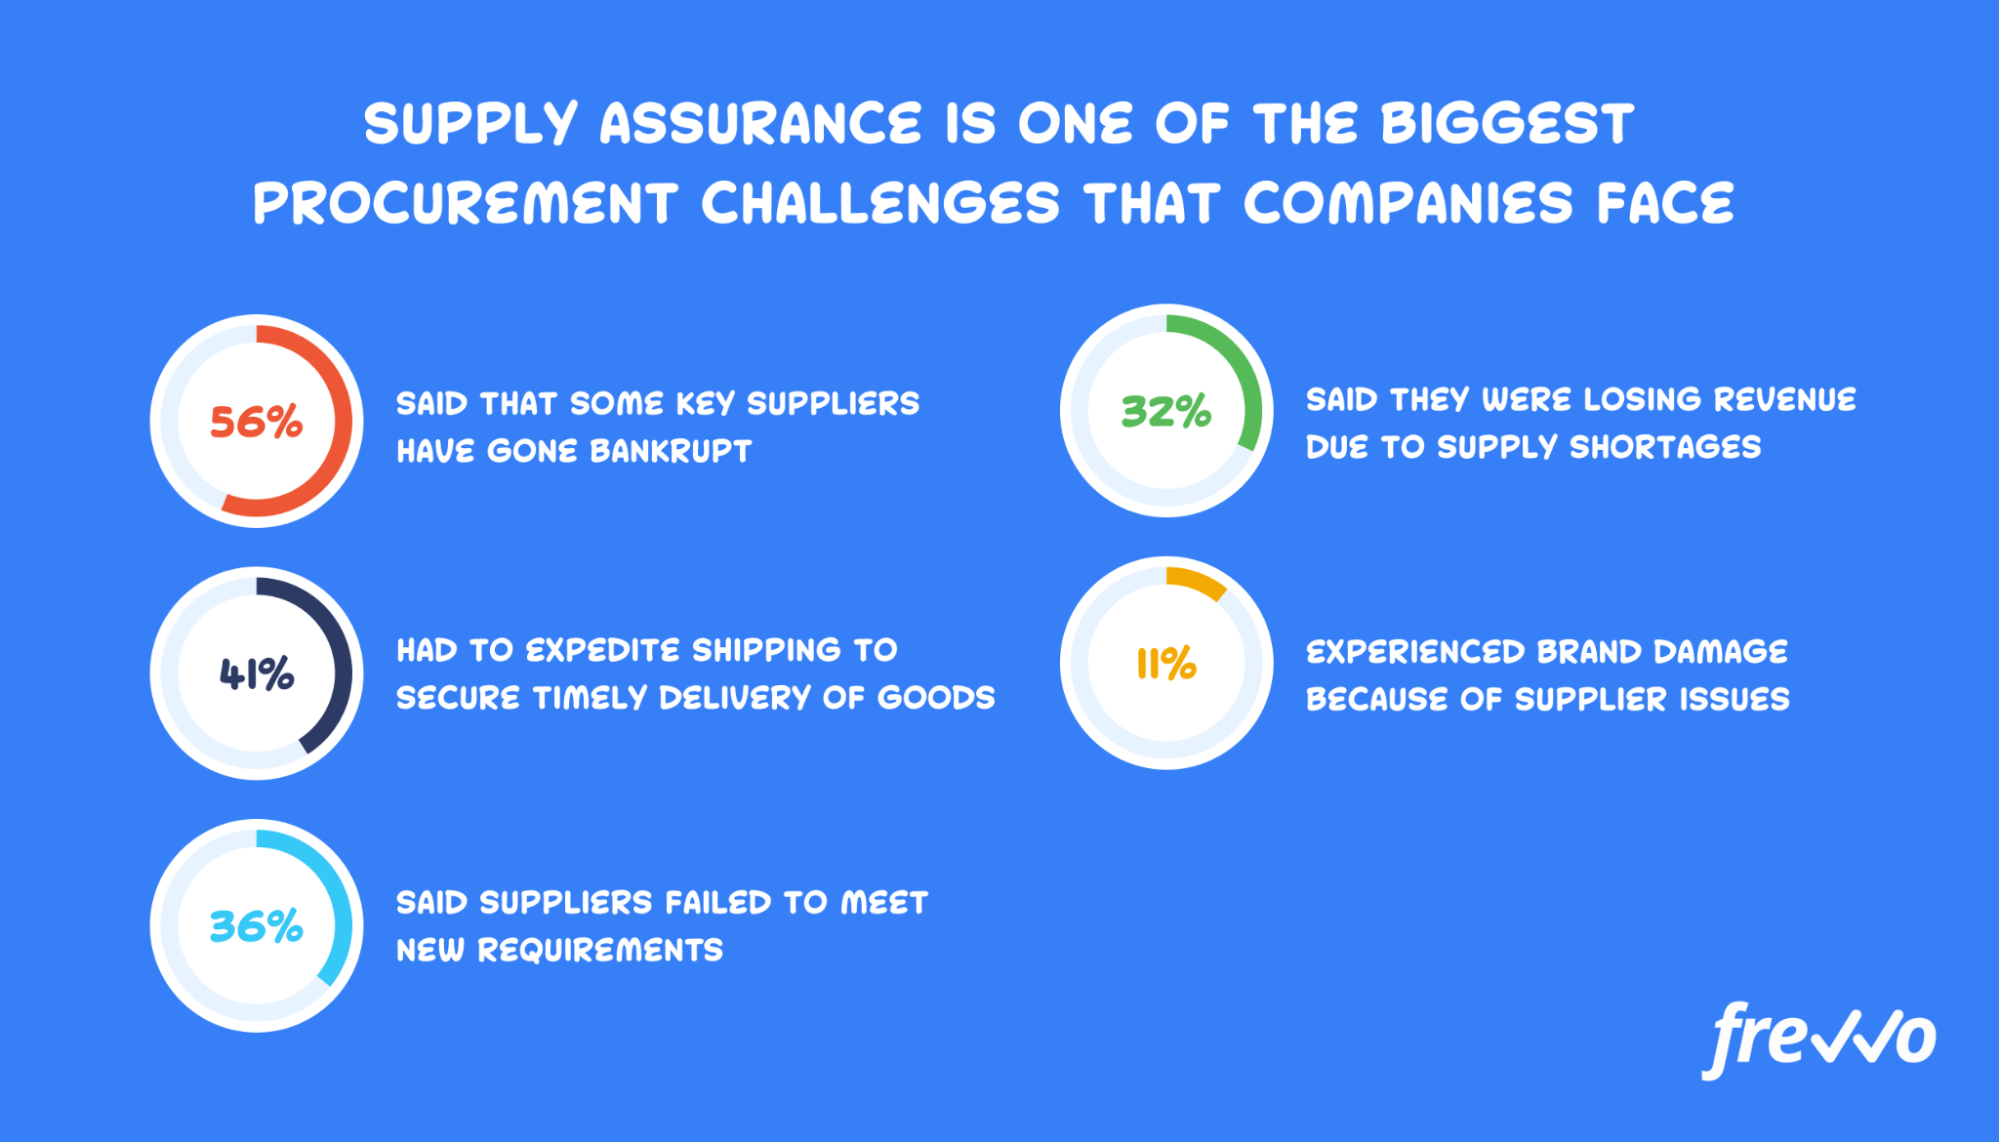 Biggest procurement challenges that companies face